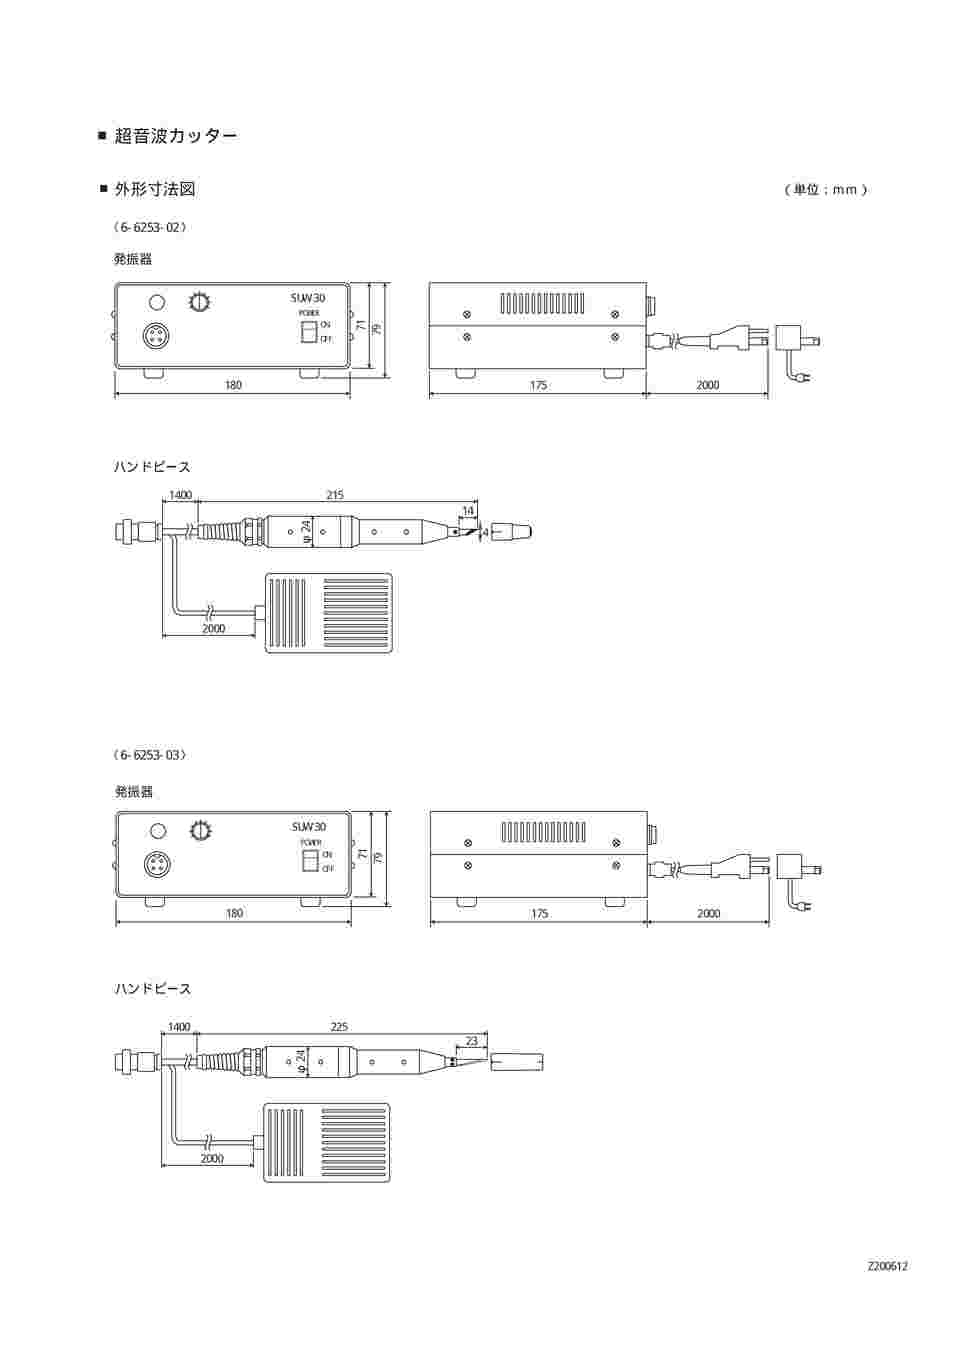 半額SALE☆ 機械工具のラプラス超音波カッター SUW-30シリーズ フットスイッチ付 SUW-30CT 6-6253-02